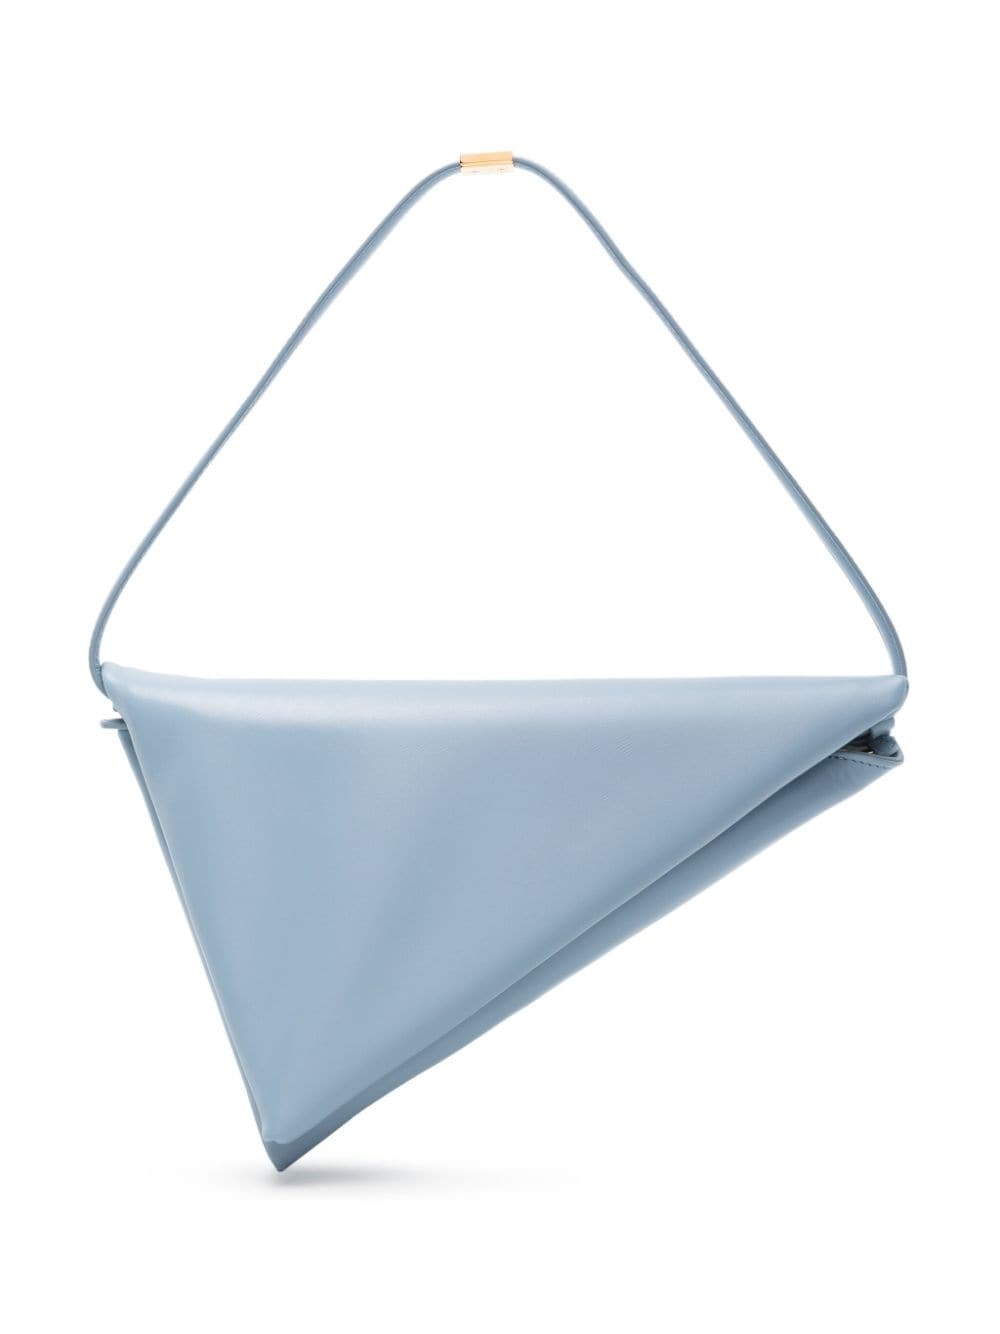 Prisma leather triangle bag - 1